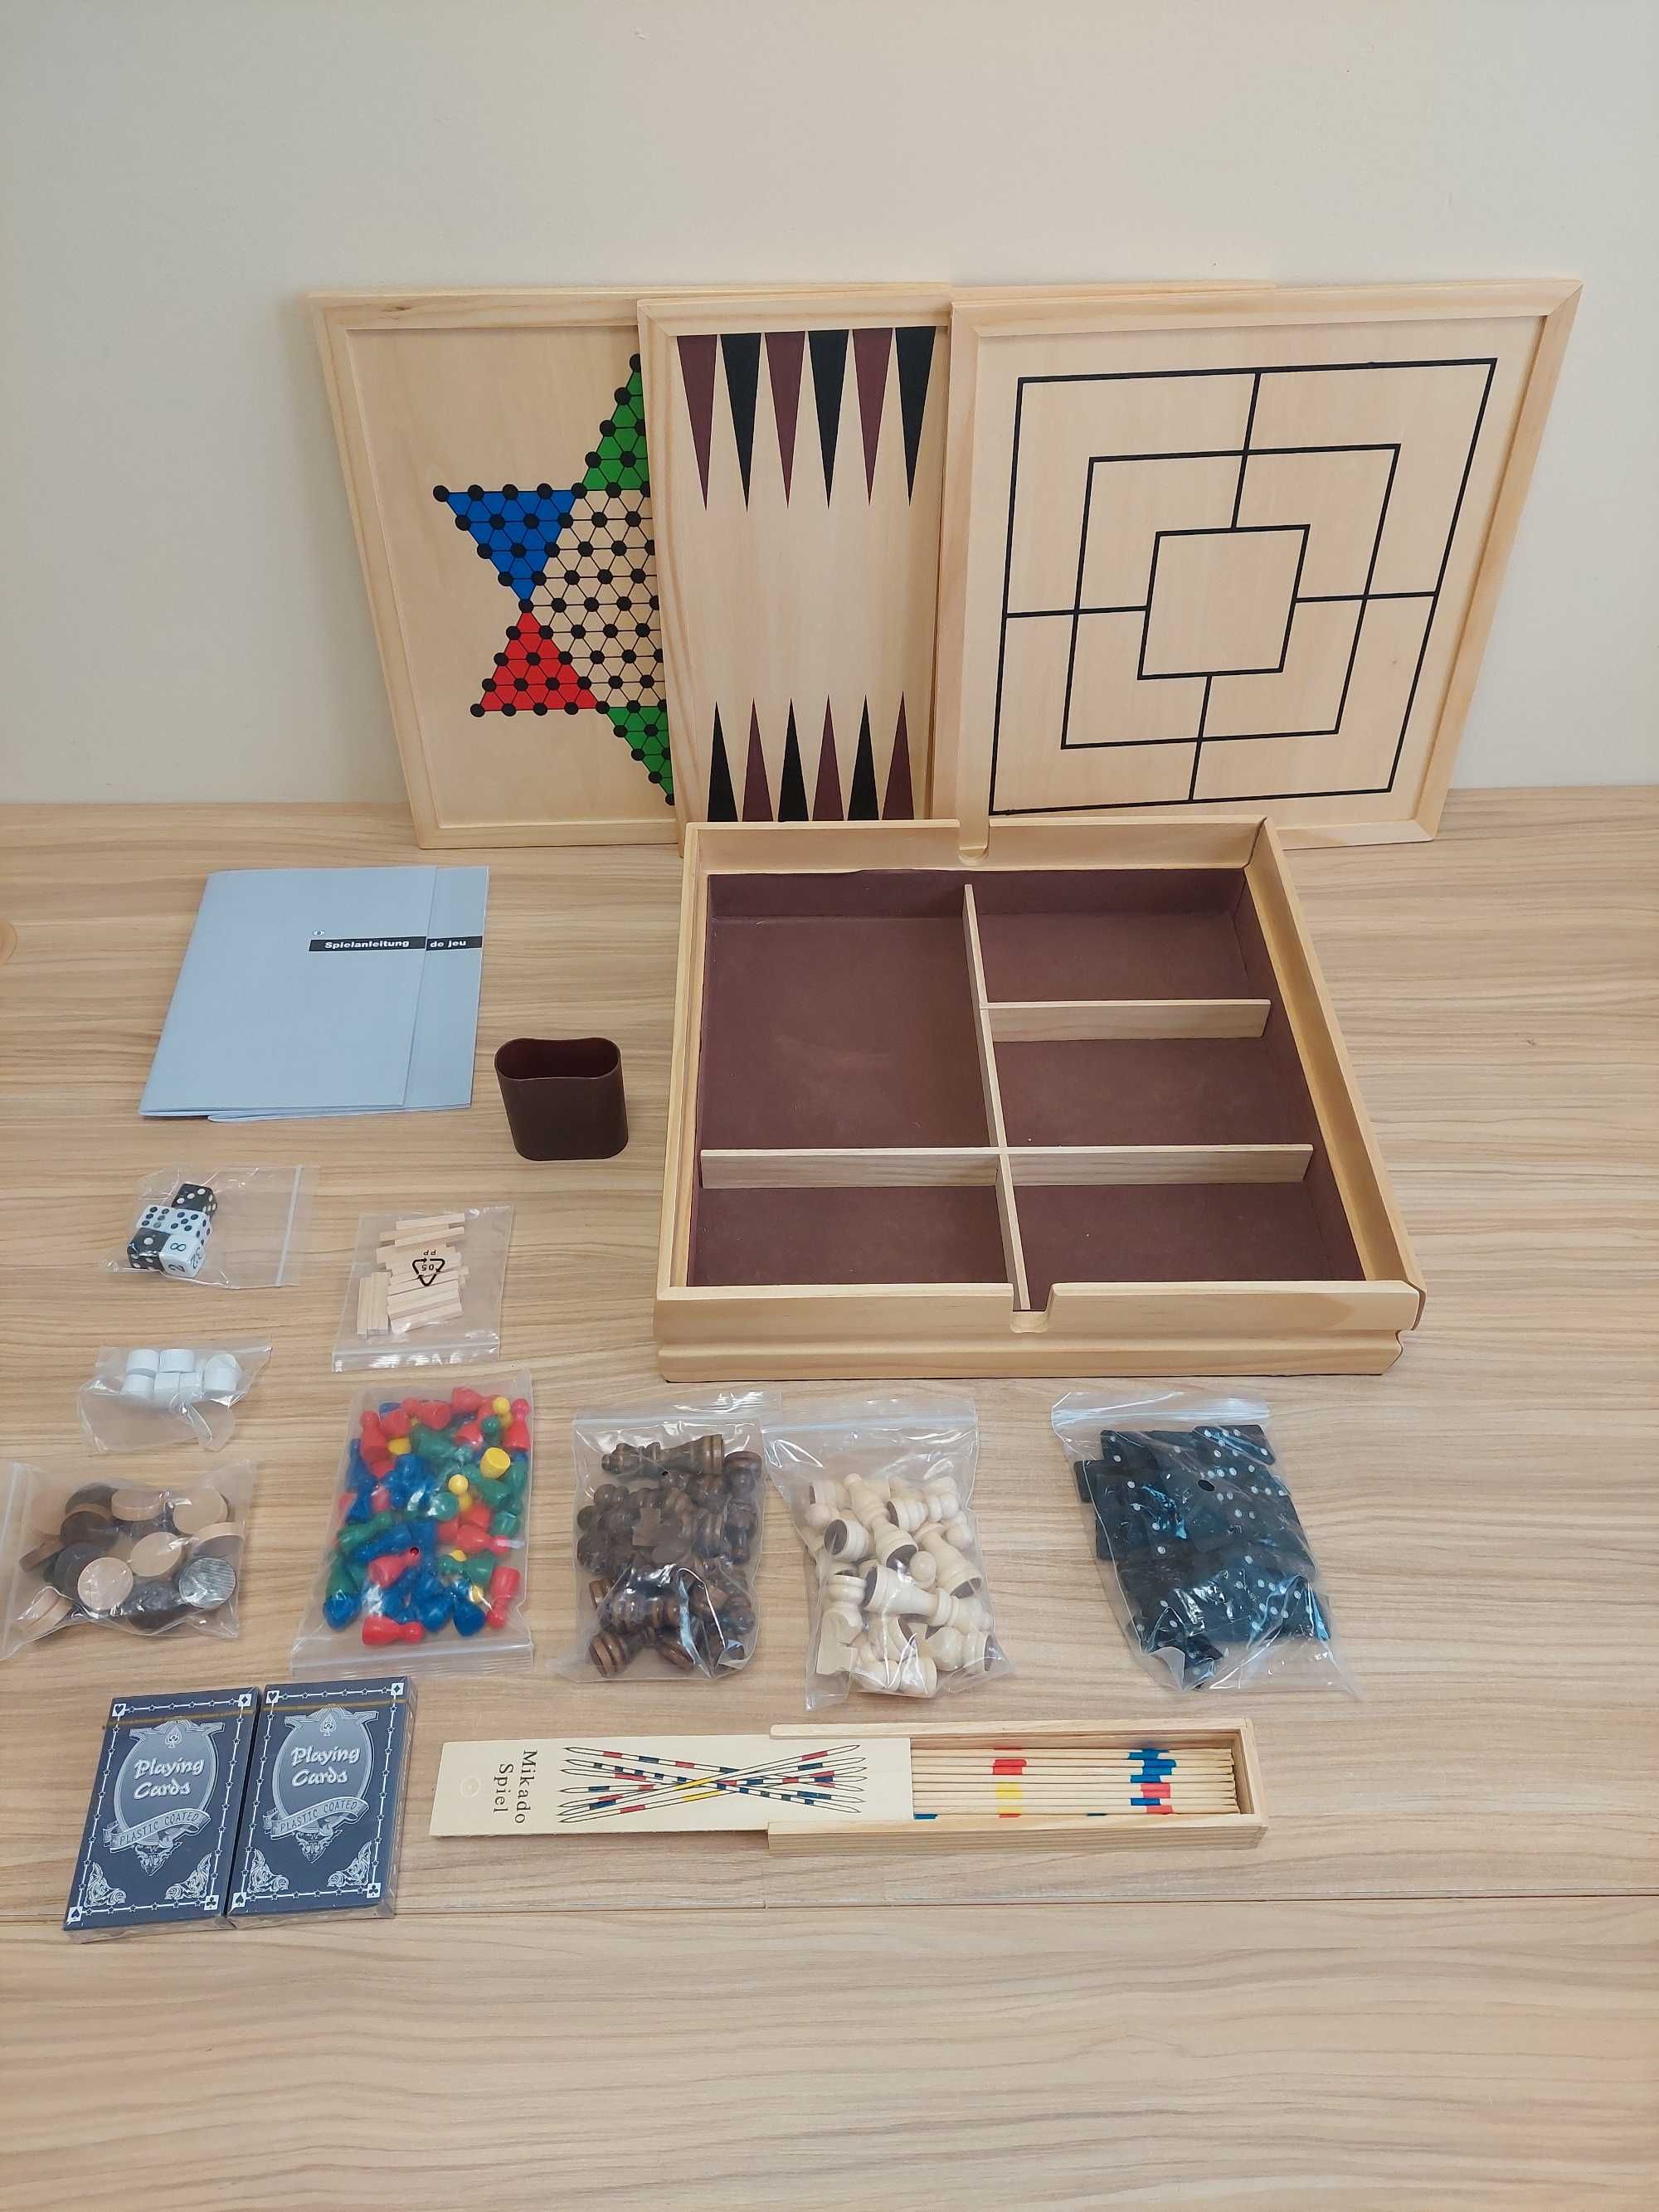 Philos 3102 - kolekcja drewnianych gier z 100 możliwościami gry